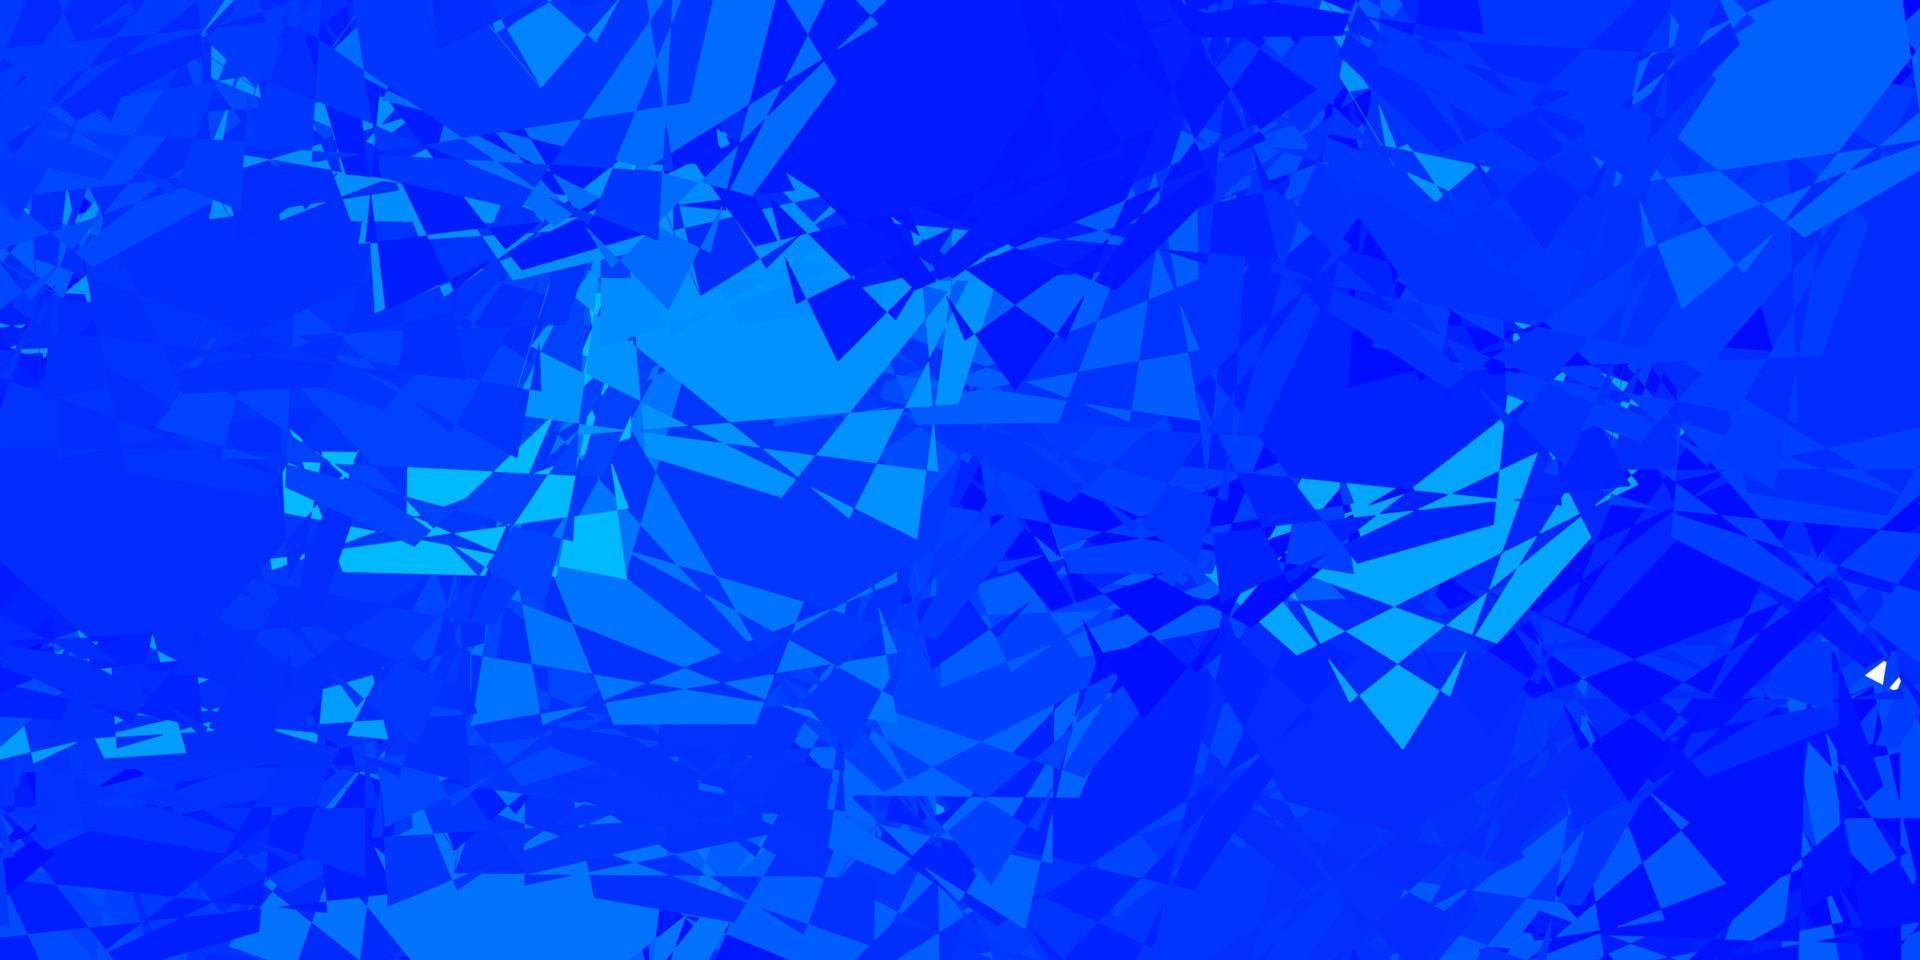 modelo de vetor azul claro com formas de triângulo.